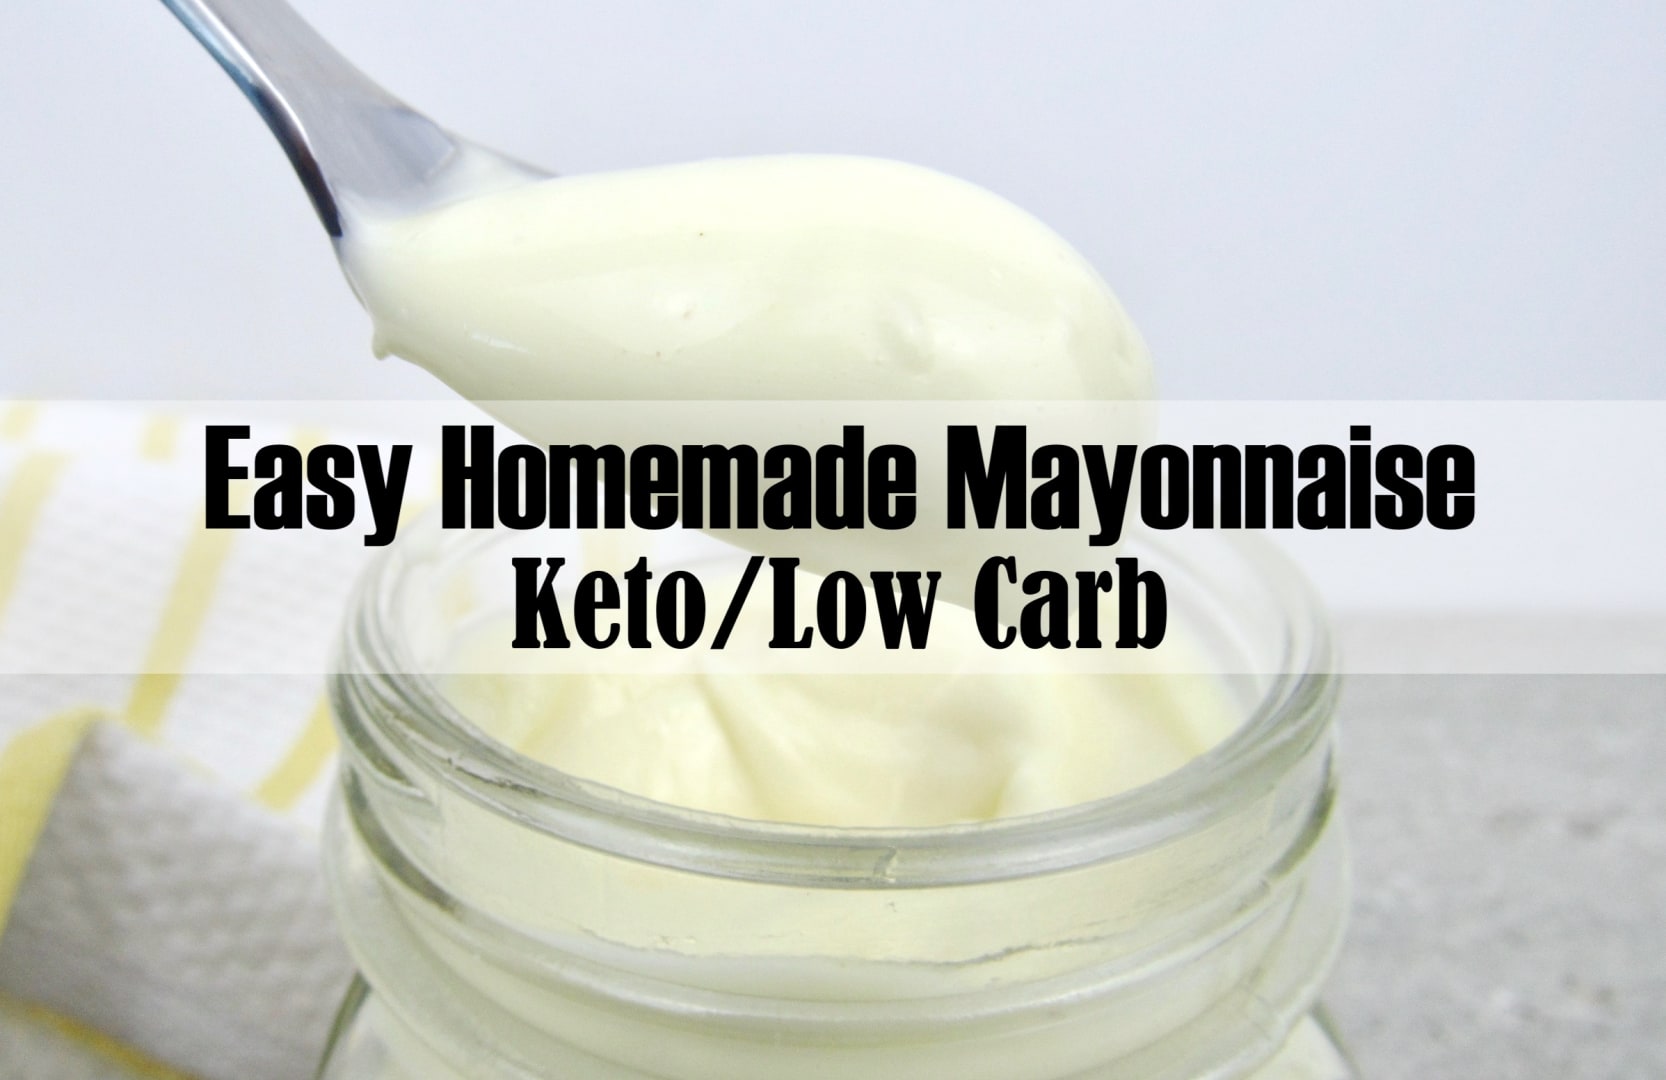 Easy Homemade Keto Mayonnaise - Calm Eats